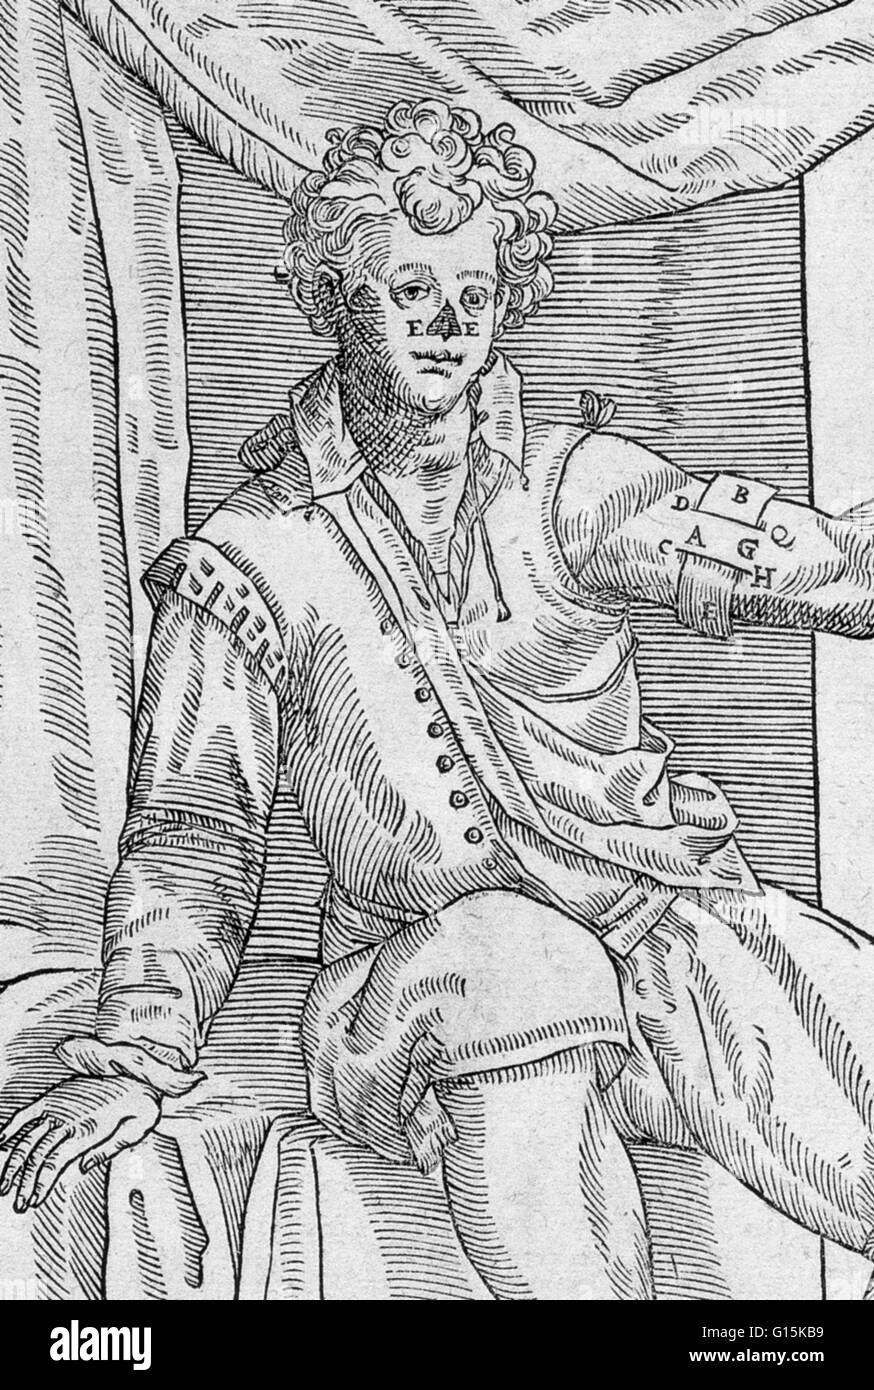 L'un de Gaspare Tagliacozzi les méthodes utilisées pour le remplacement d'un nez manquant. Nous voyons ici comment le lambeau cutané incisé sera levée à l'abri de la chair (A, G) avec un pansement bande (B, E). Gaspare Tagliacozzi (1547-1599) était un chirurgien plastique. Bien que rec Banque D'Images